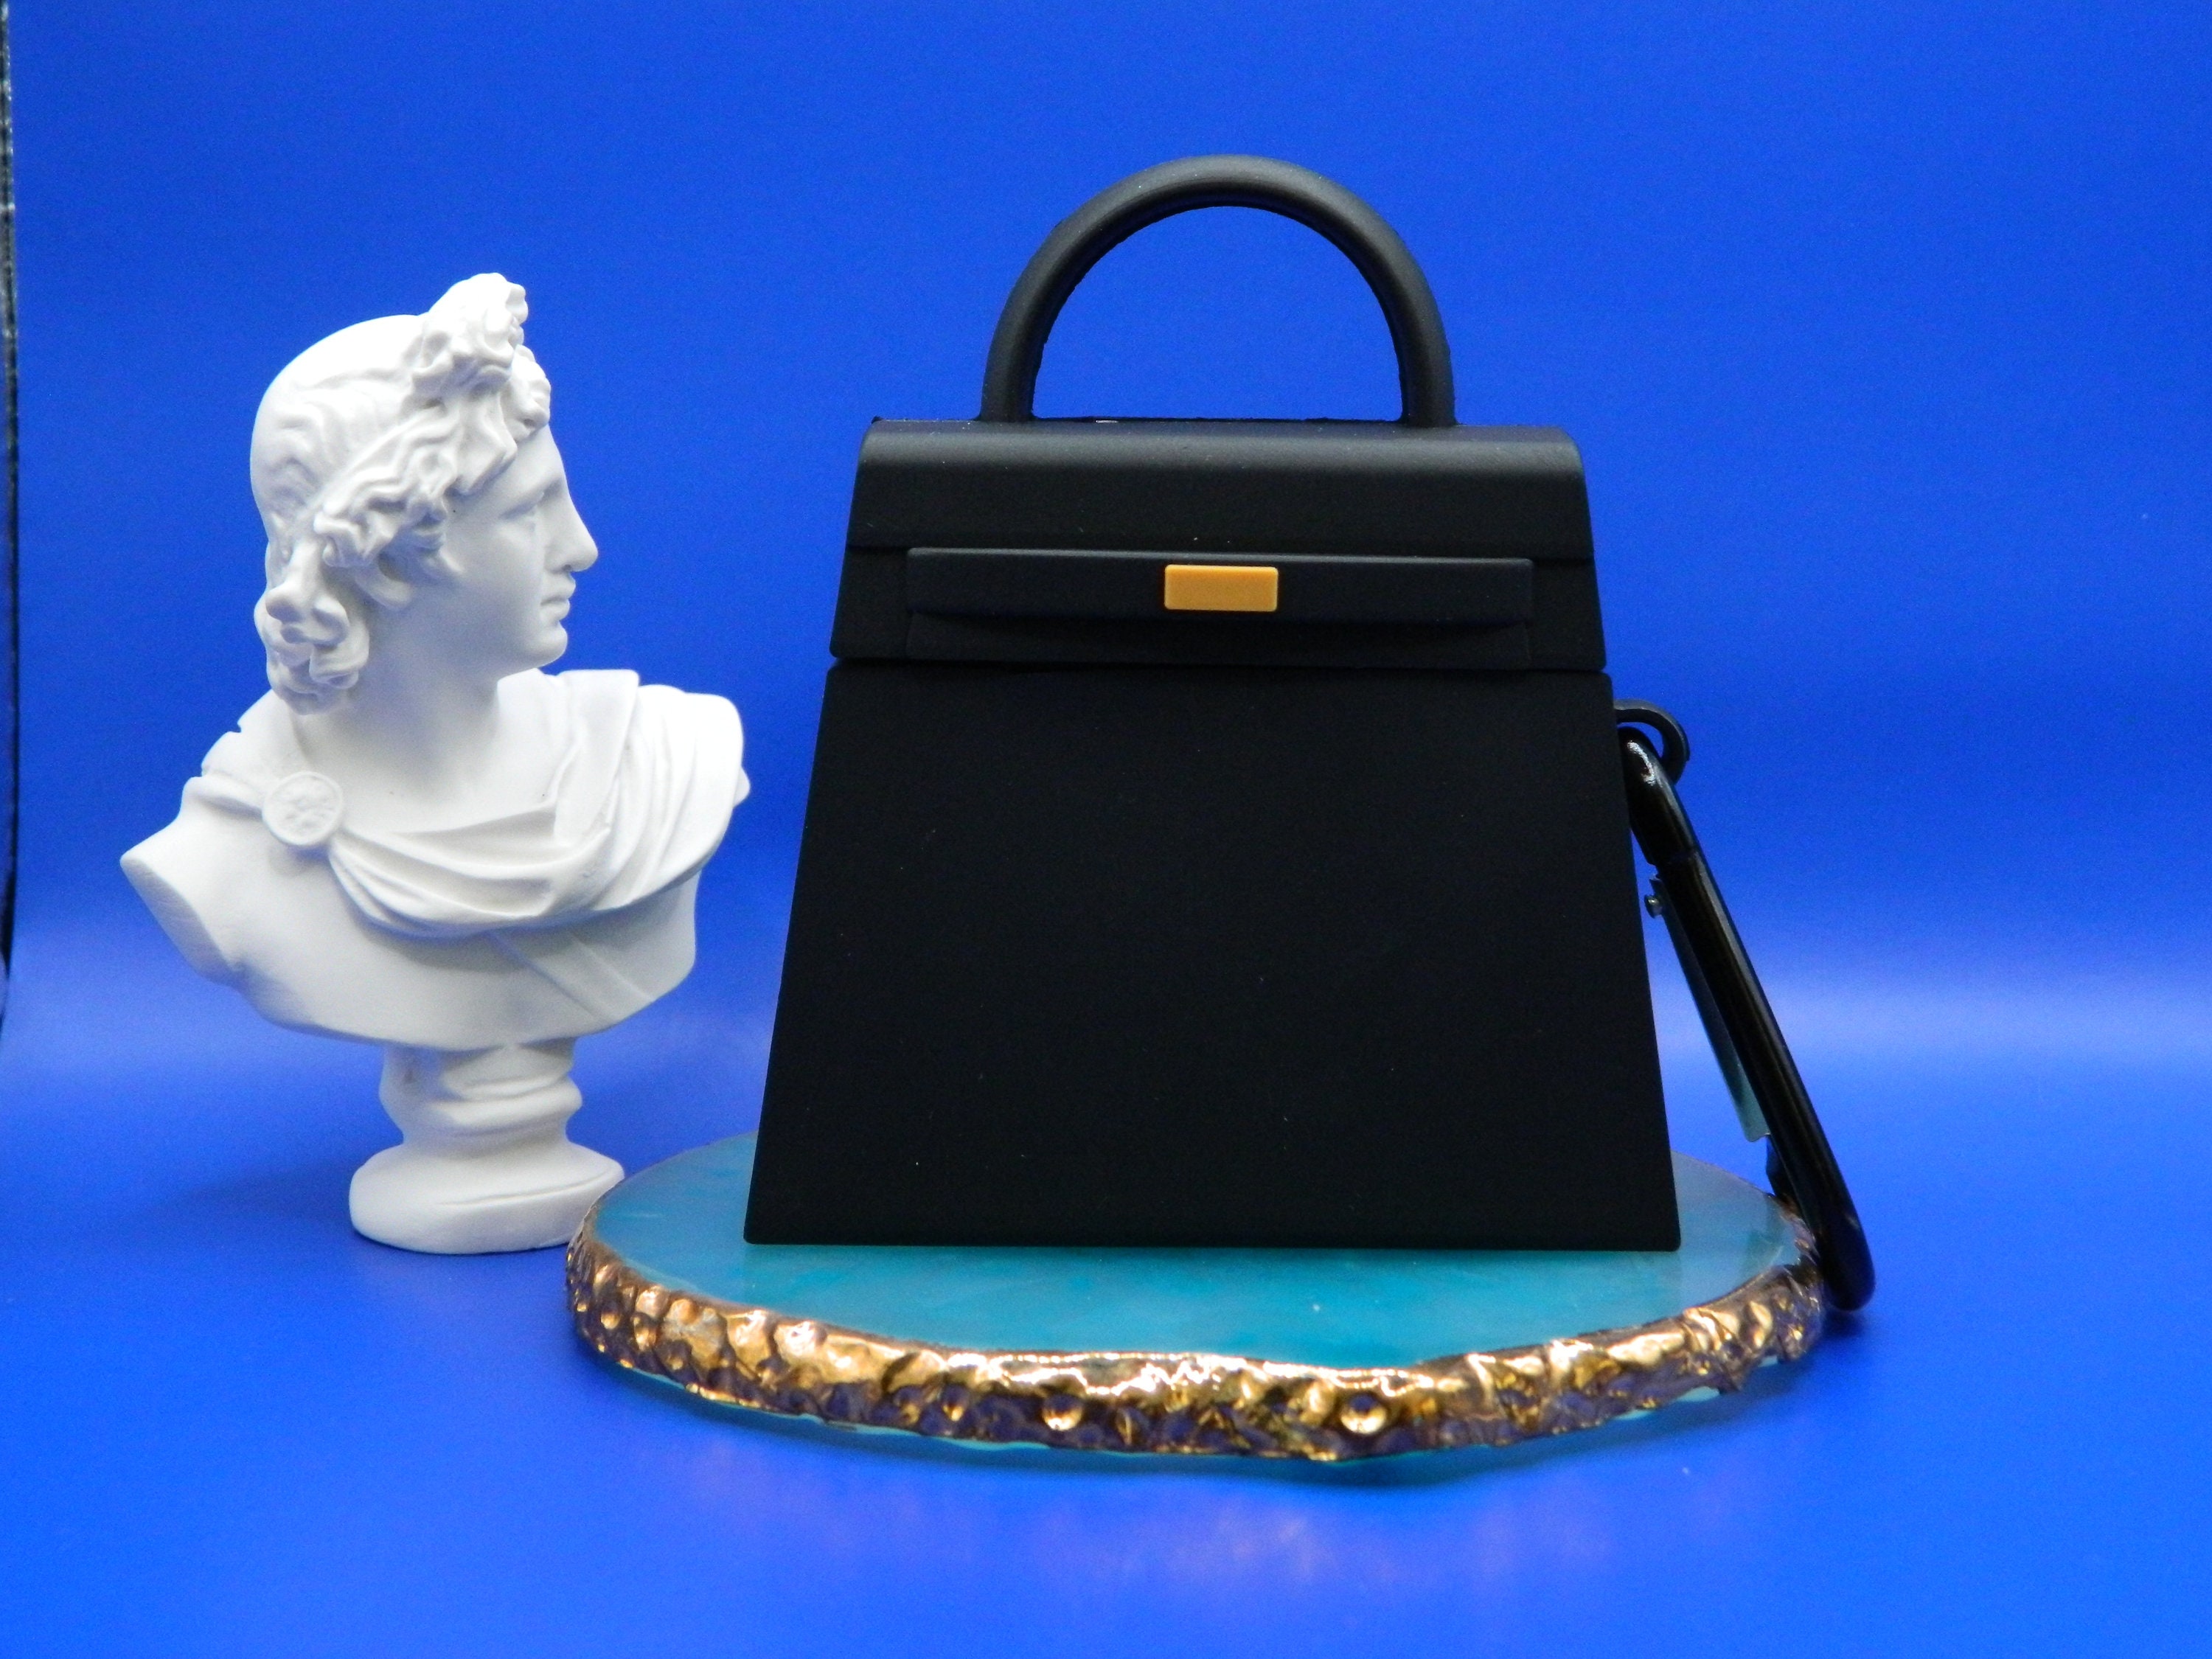 Luxury Airpod Pro case Bag With Chain for Sale in La Mirada, CA